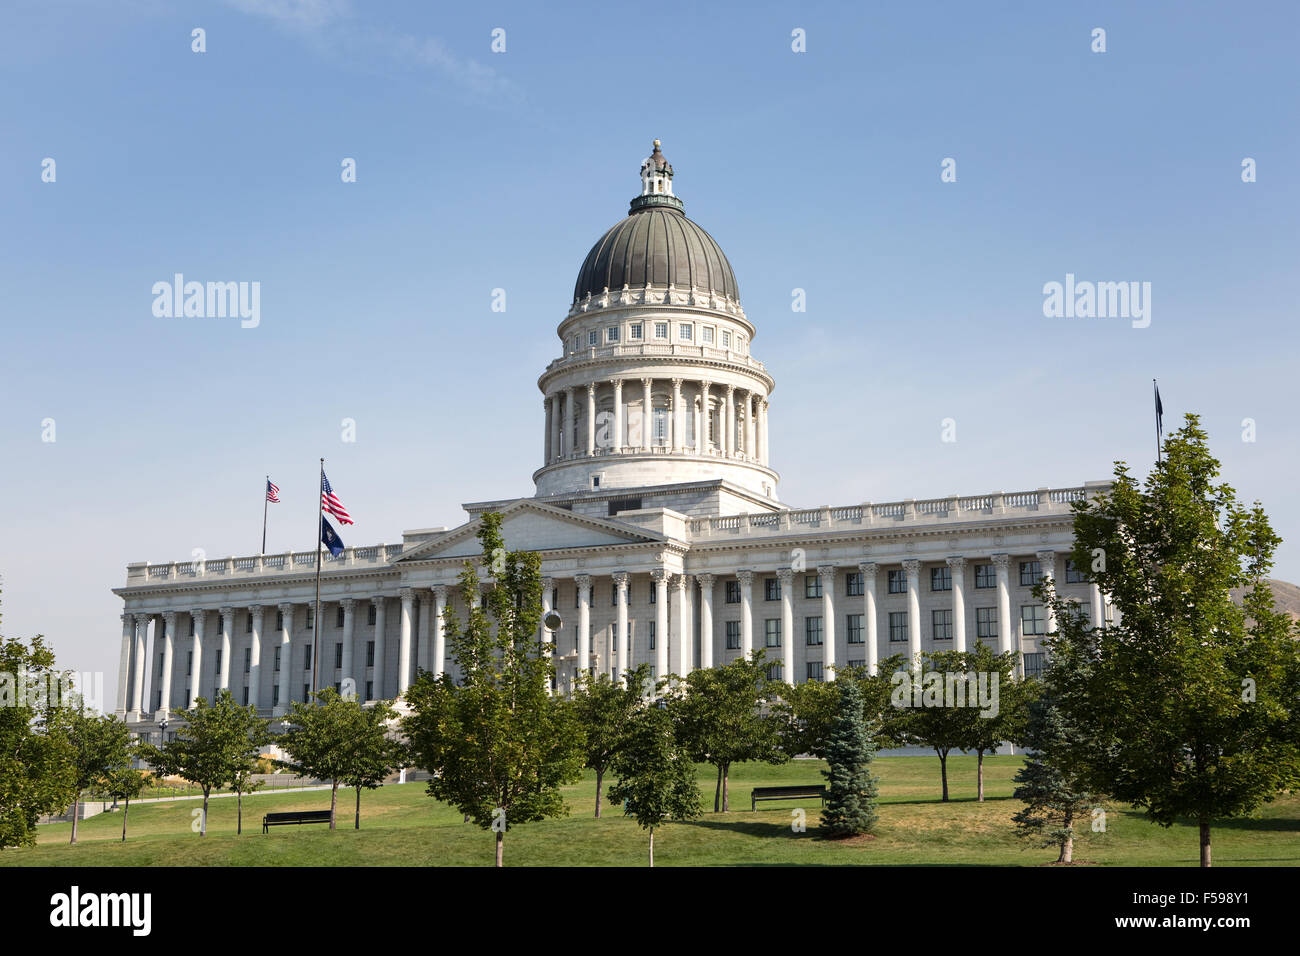 Utah State Capitol building is located in Salt Lake City, Utah, USA. Stock Photo